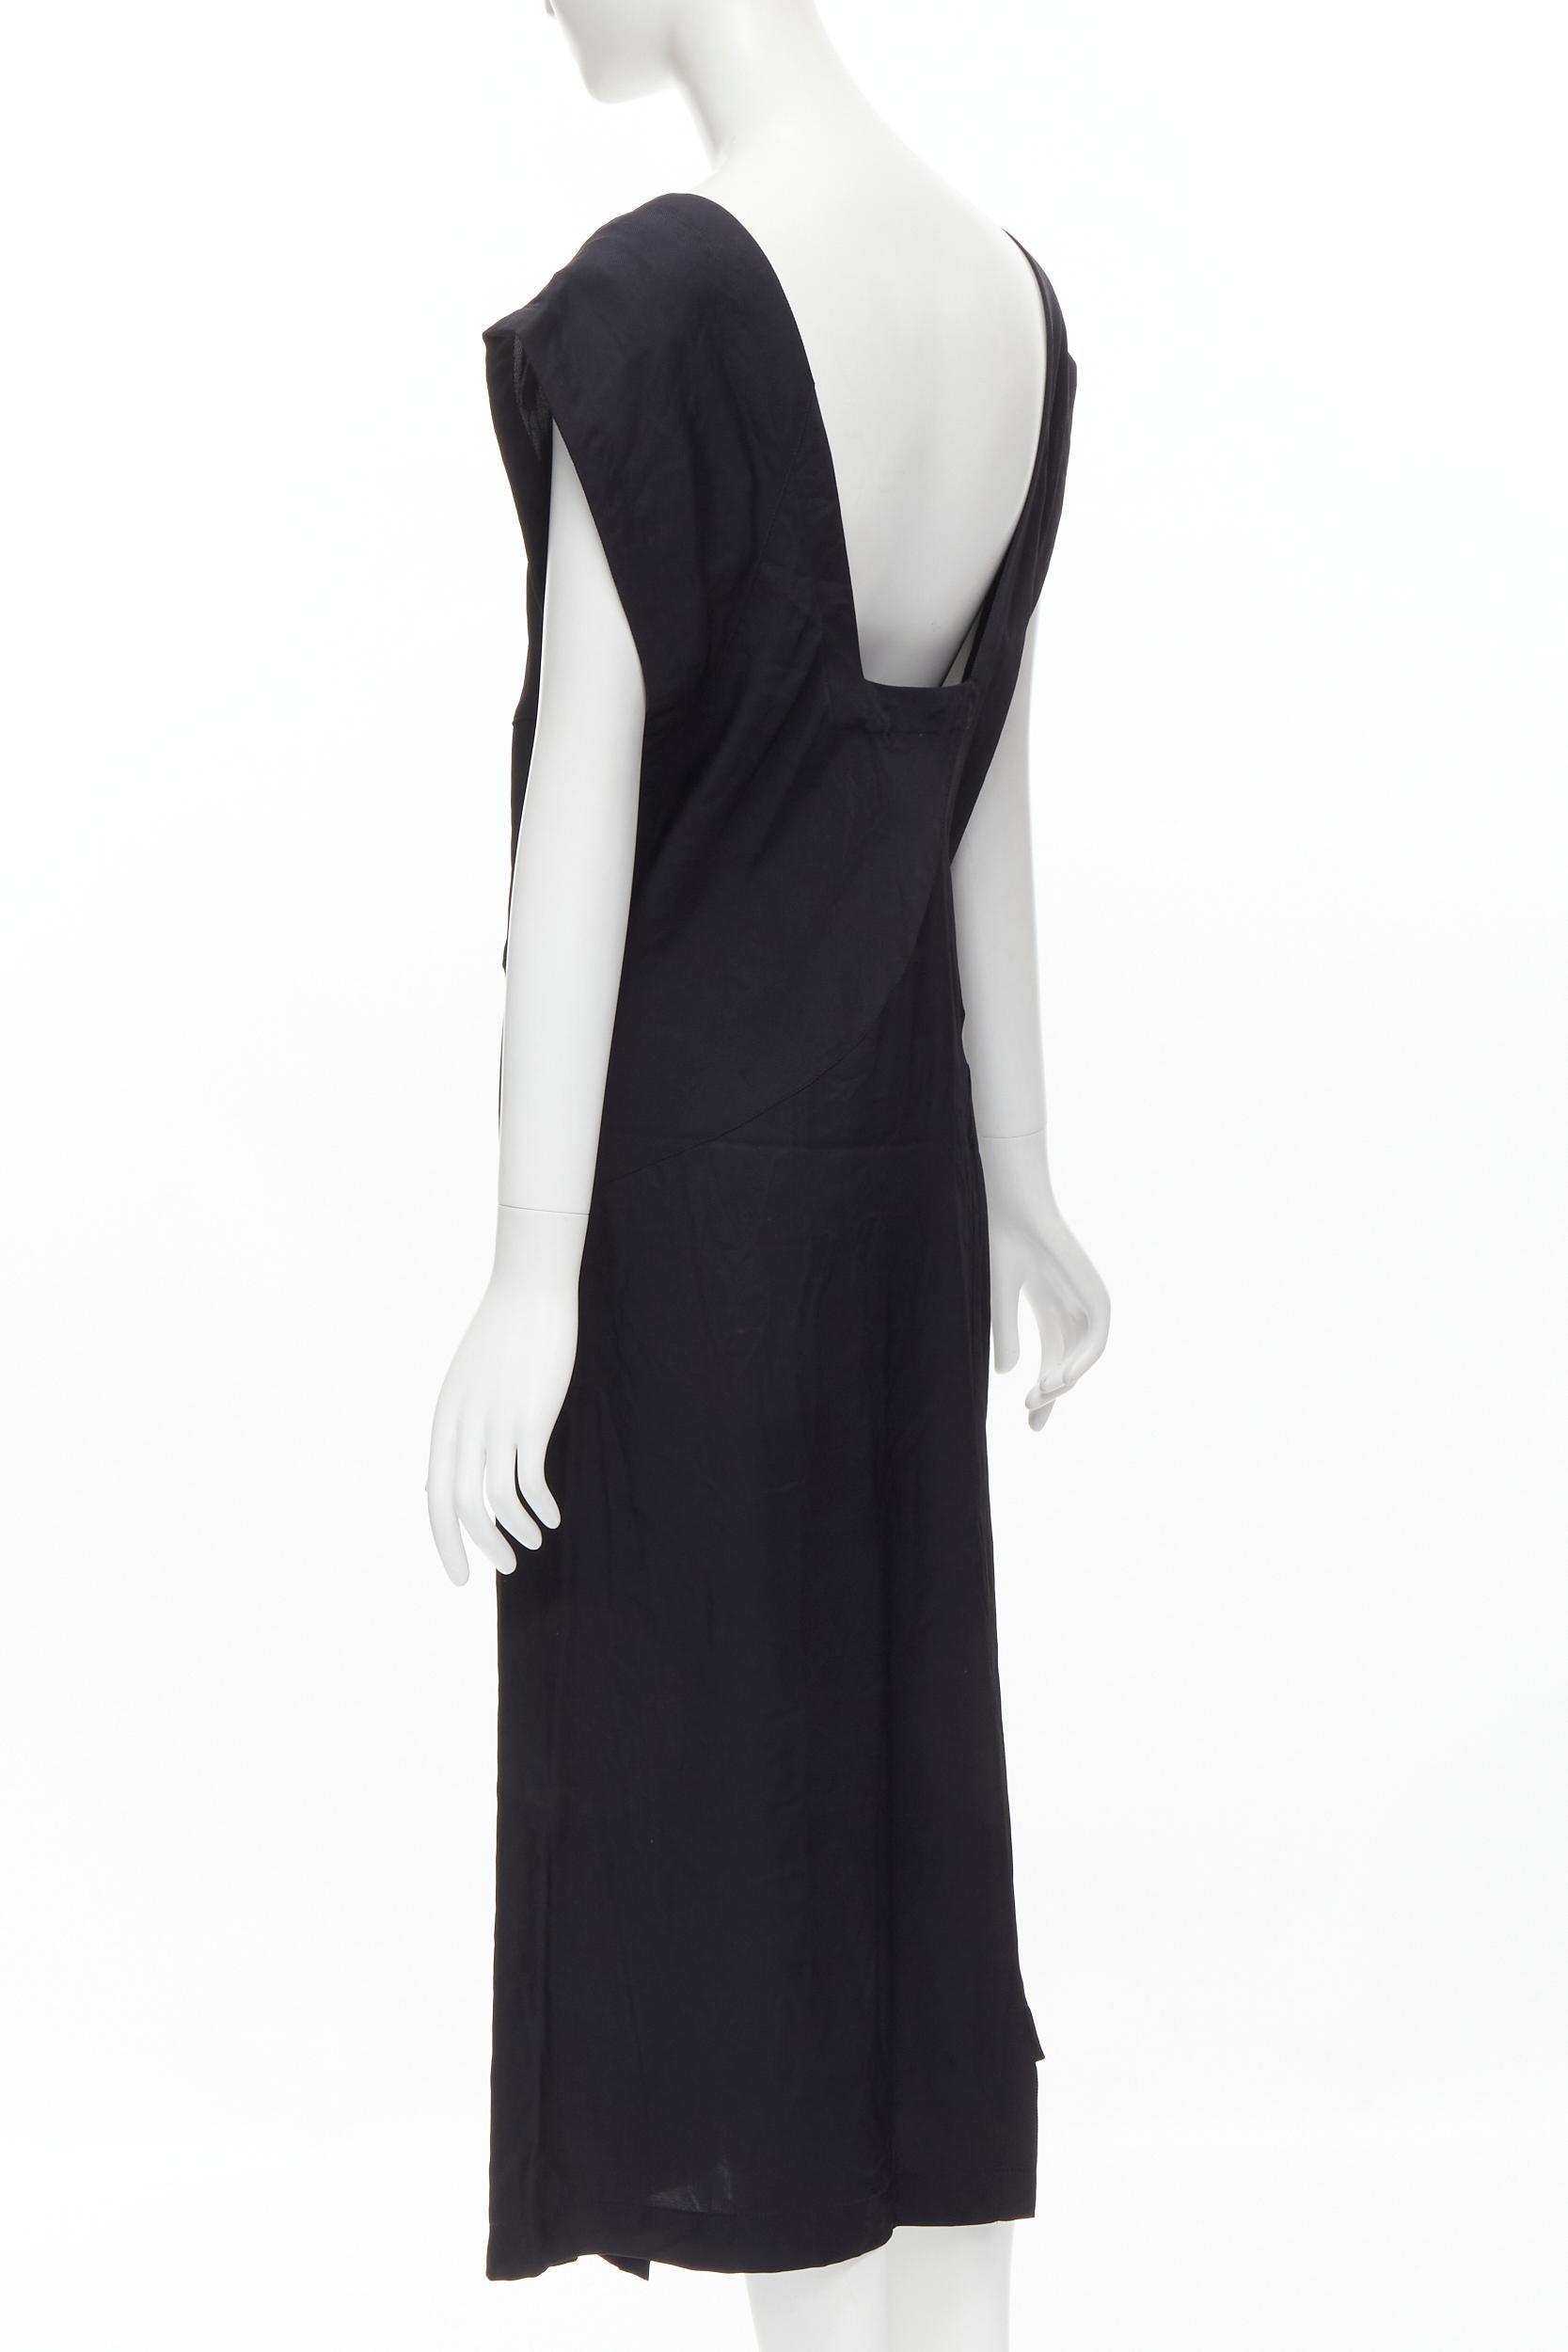 COMME DES GARCONS Vintage 1980s square neck oversized bias cut dress For Sale 1